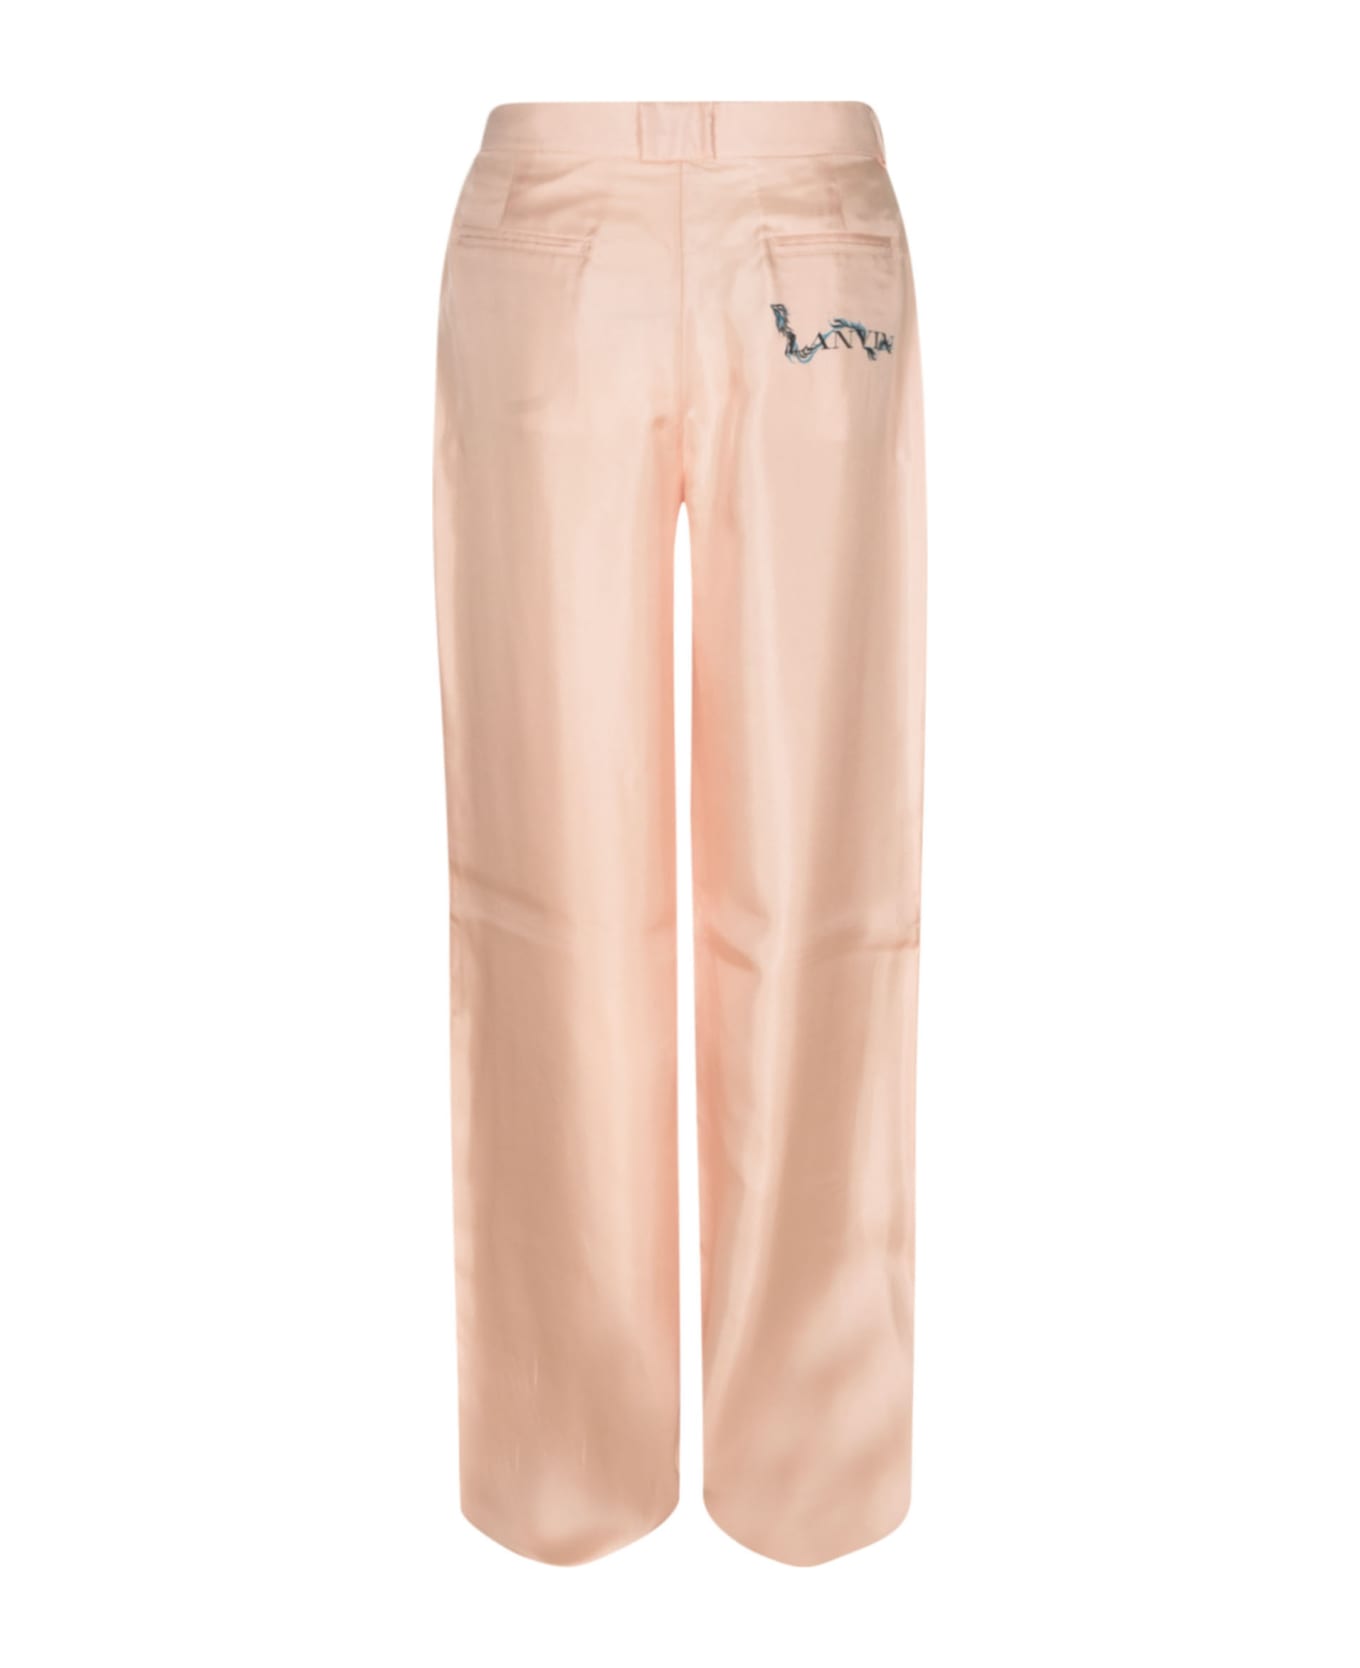 Lanvin High Waist Long Trousers - Pink